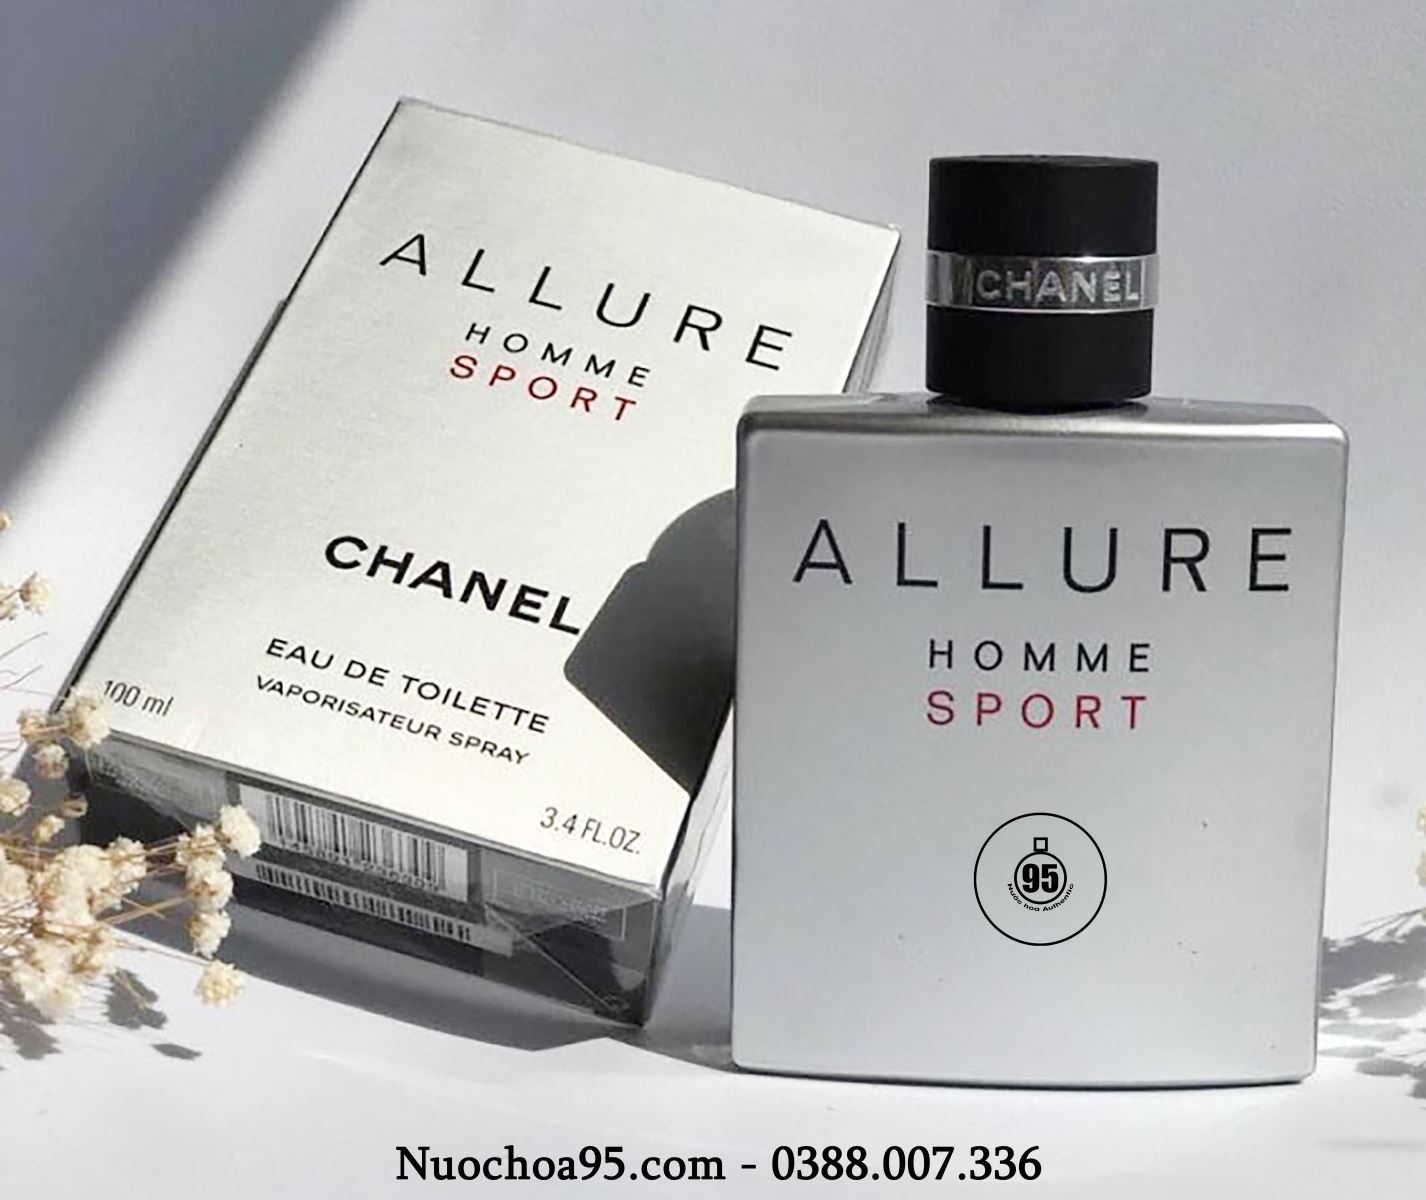 2 x Chanel 1 Bleu de Chanel Parfum amp 1 Homme Sport EDT 15ml  005oz  each  eBay